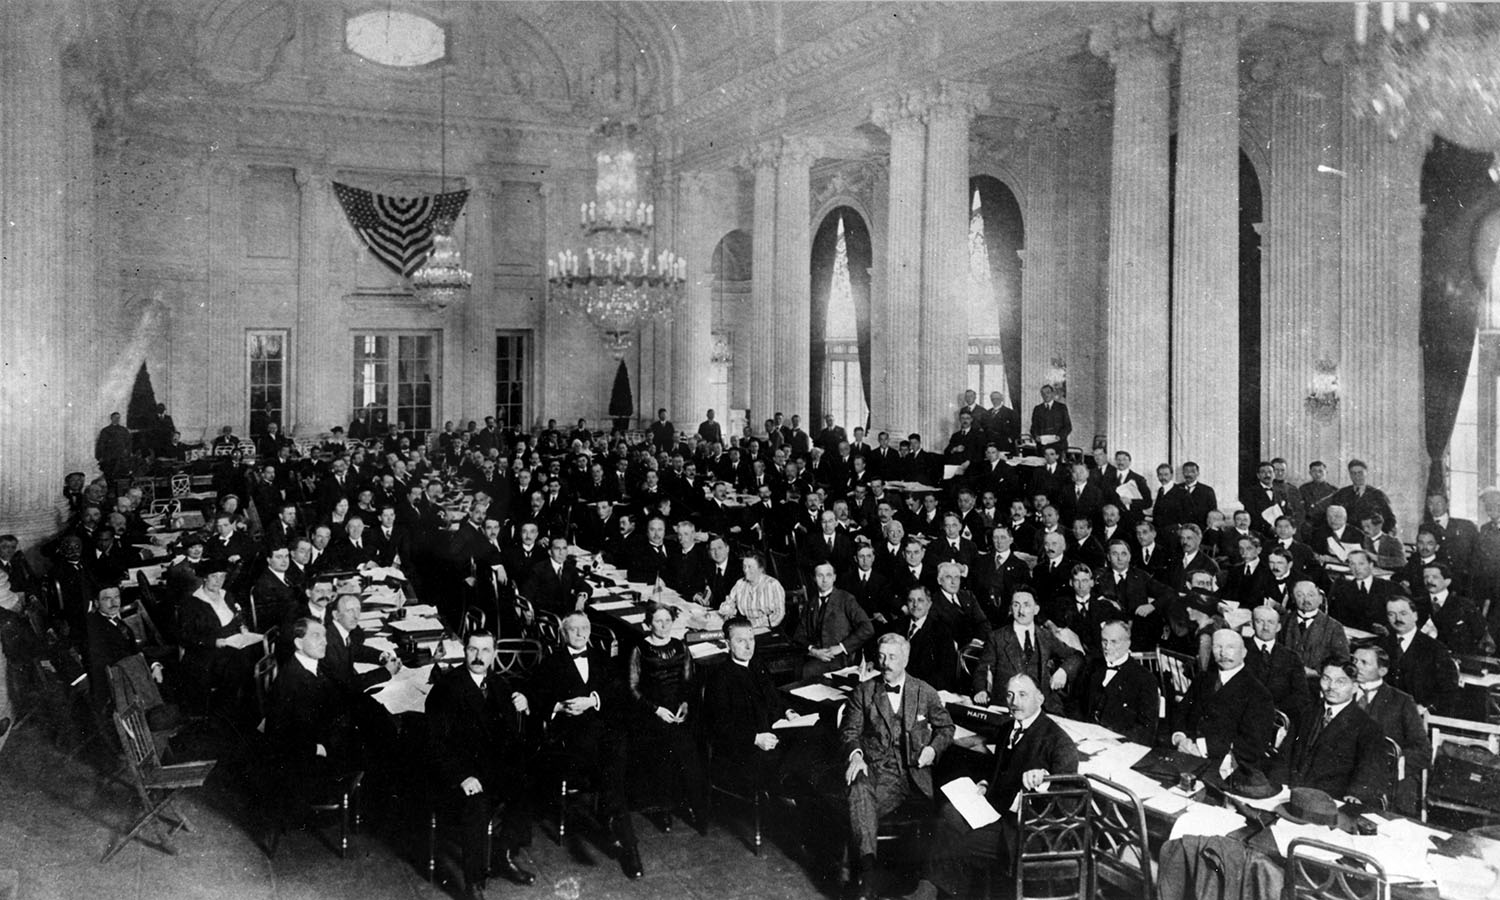 1° Conferenza internazionale del lavoro, Delegati in seduta plenaria a Washington DC, Archivi storici OIL, 1919.